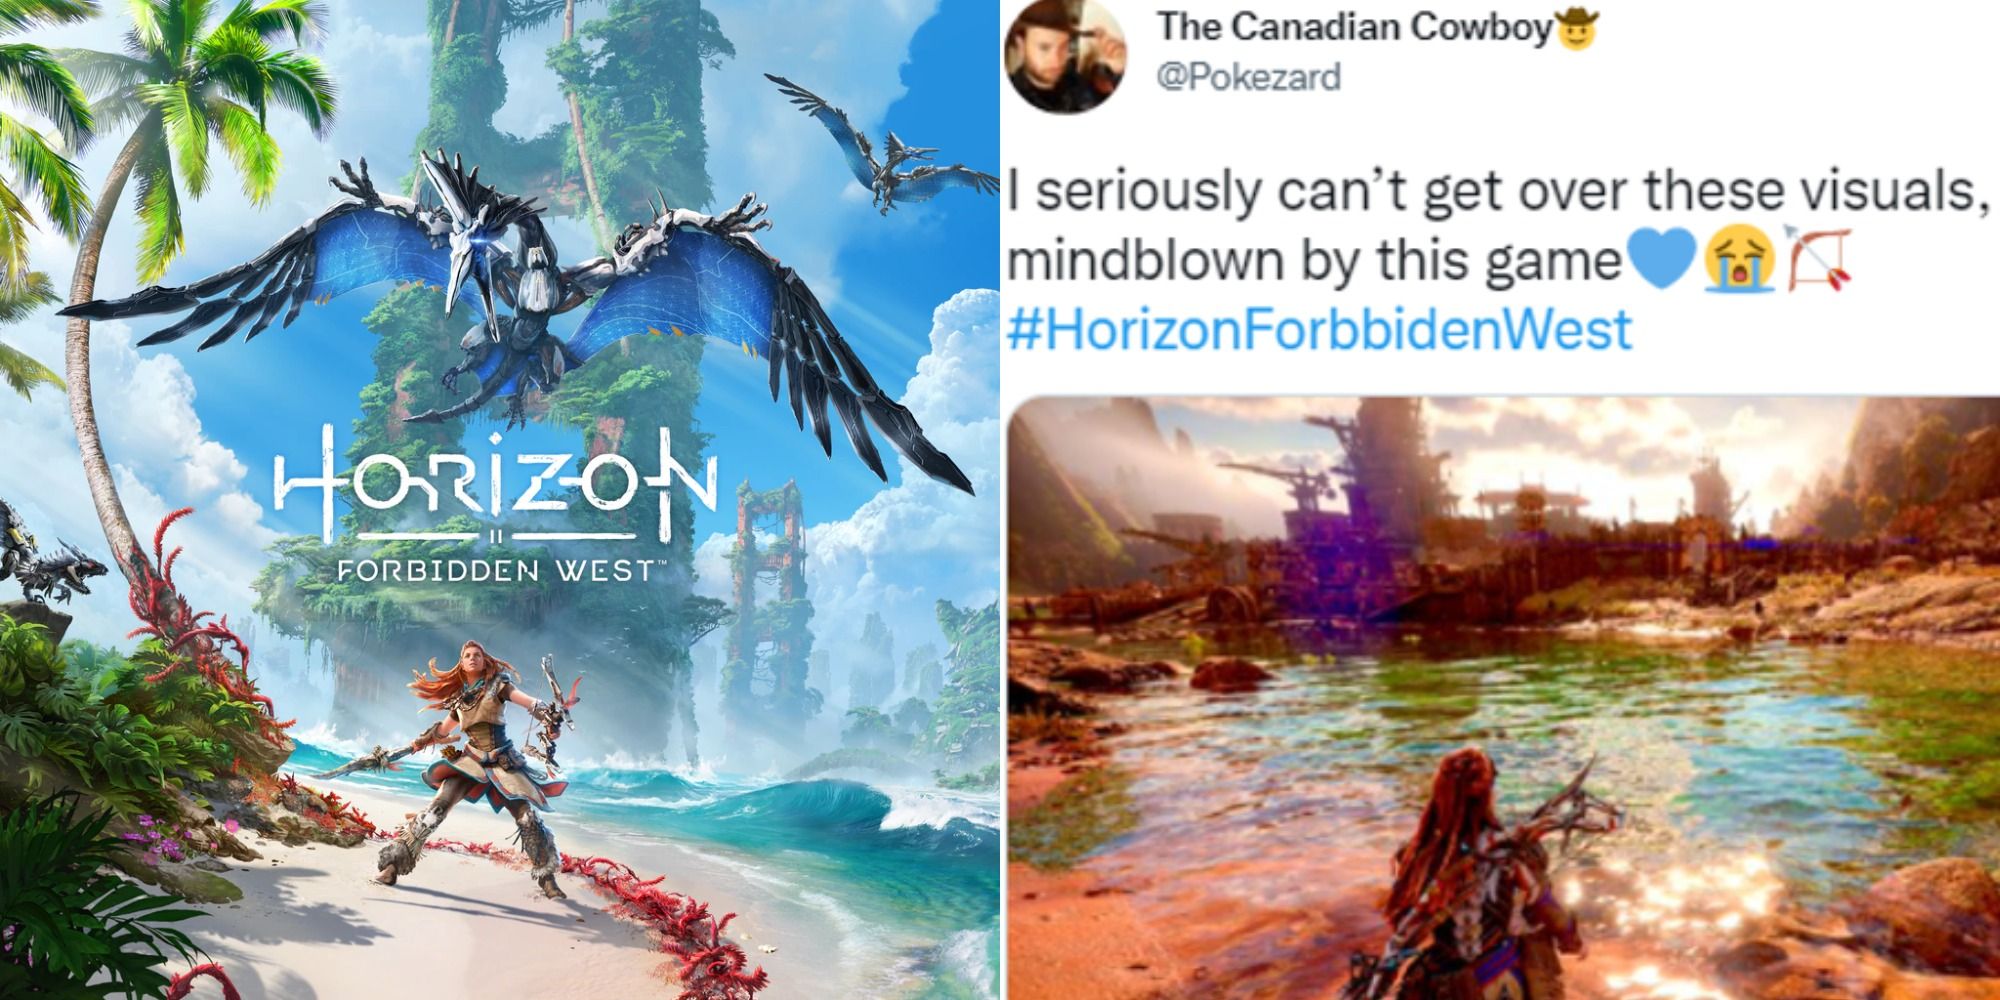 Horizon Forbidden West DLC teased in actor's quickly deleted tweet - Dexerto